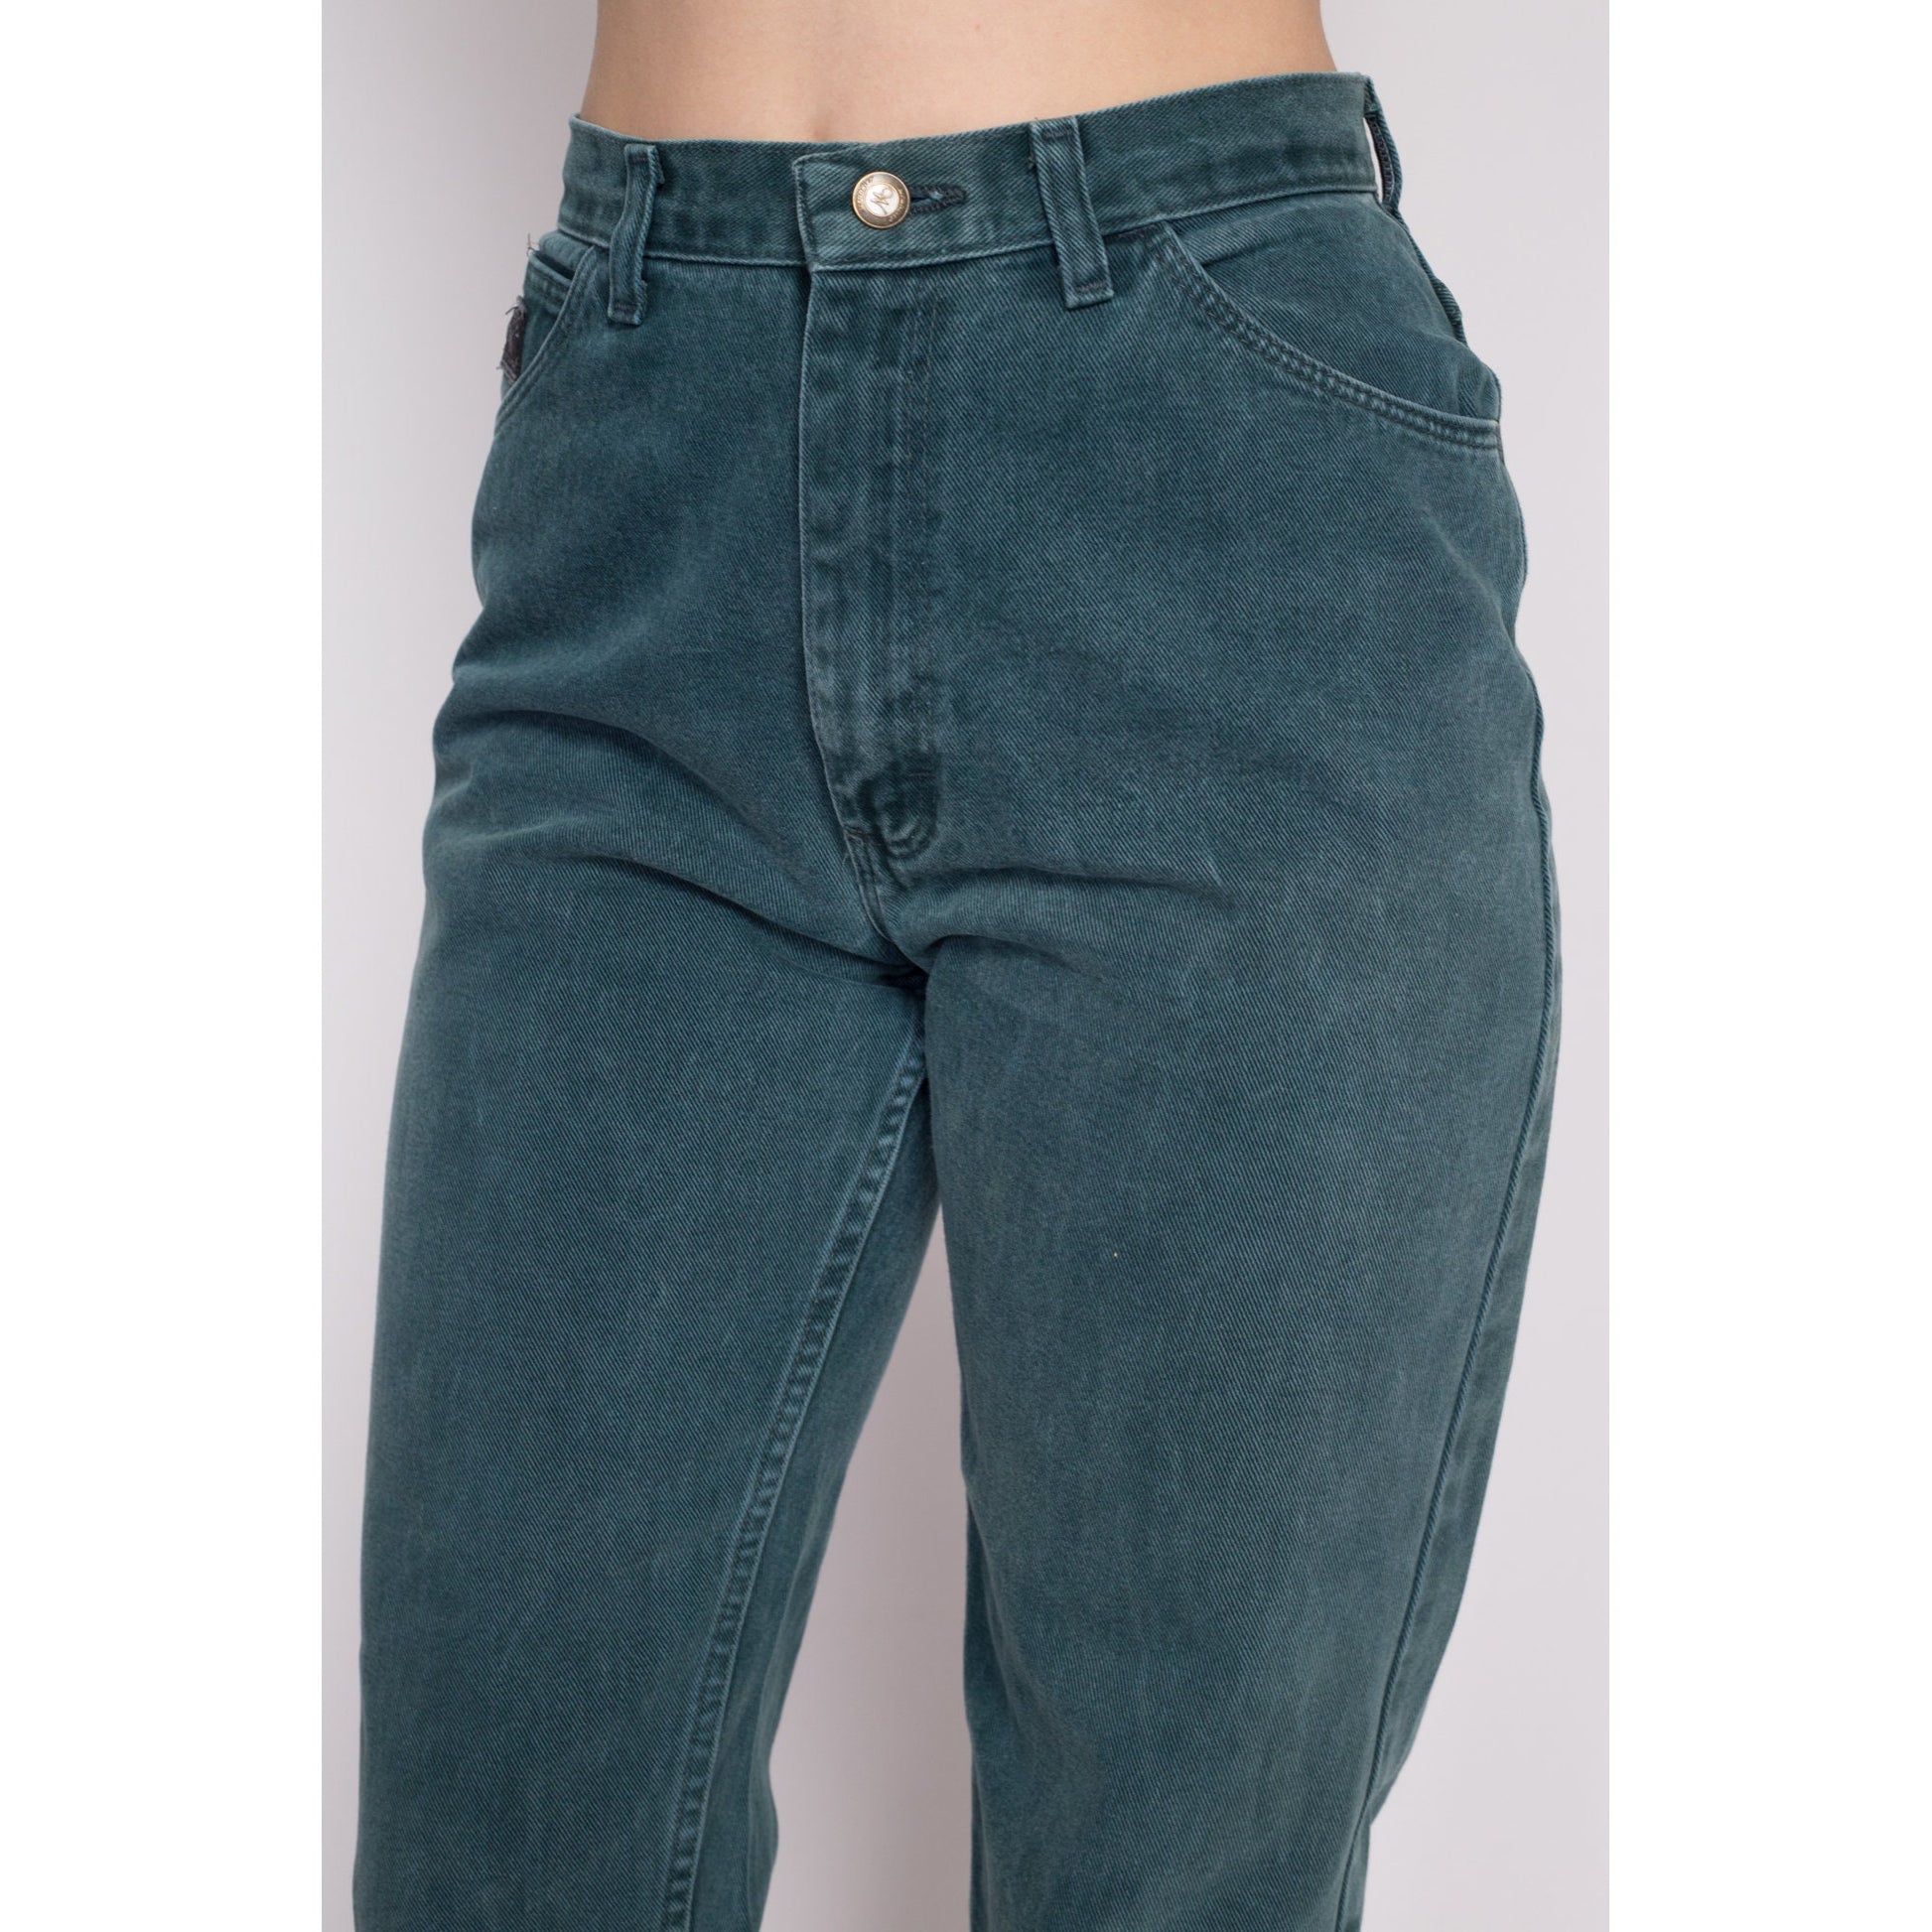 Vintage Retro 80s 90s Wrangler High Waisted Denim Jeans Women's Size 11 